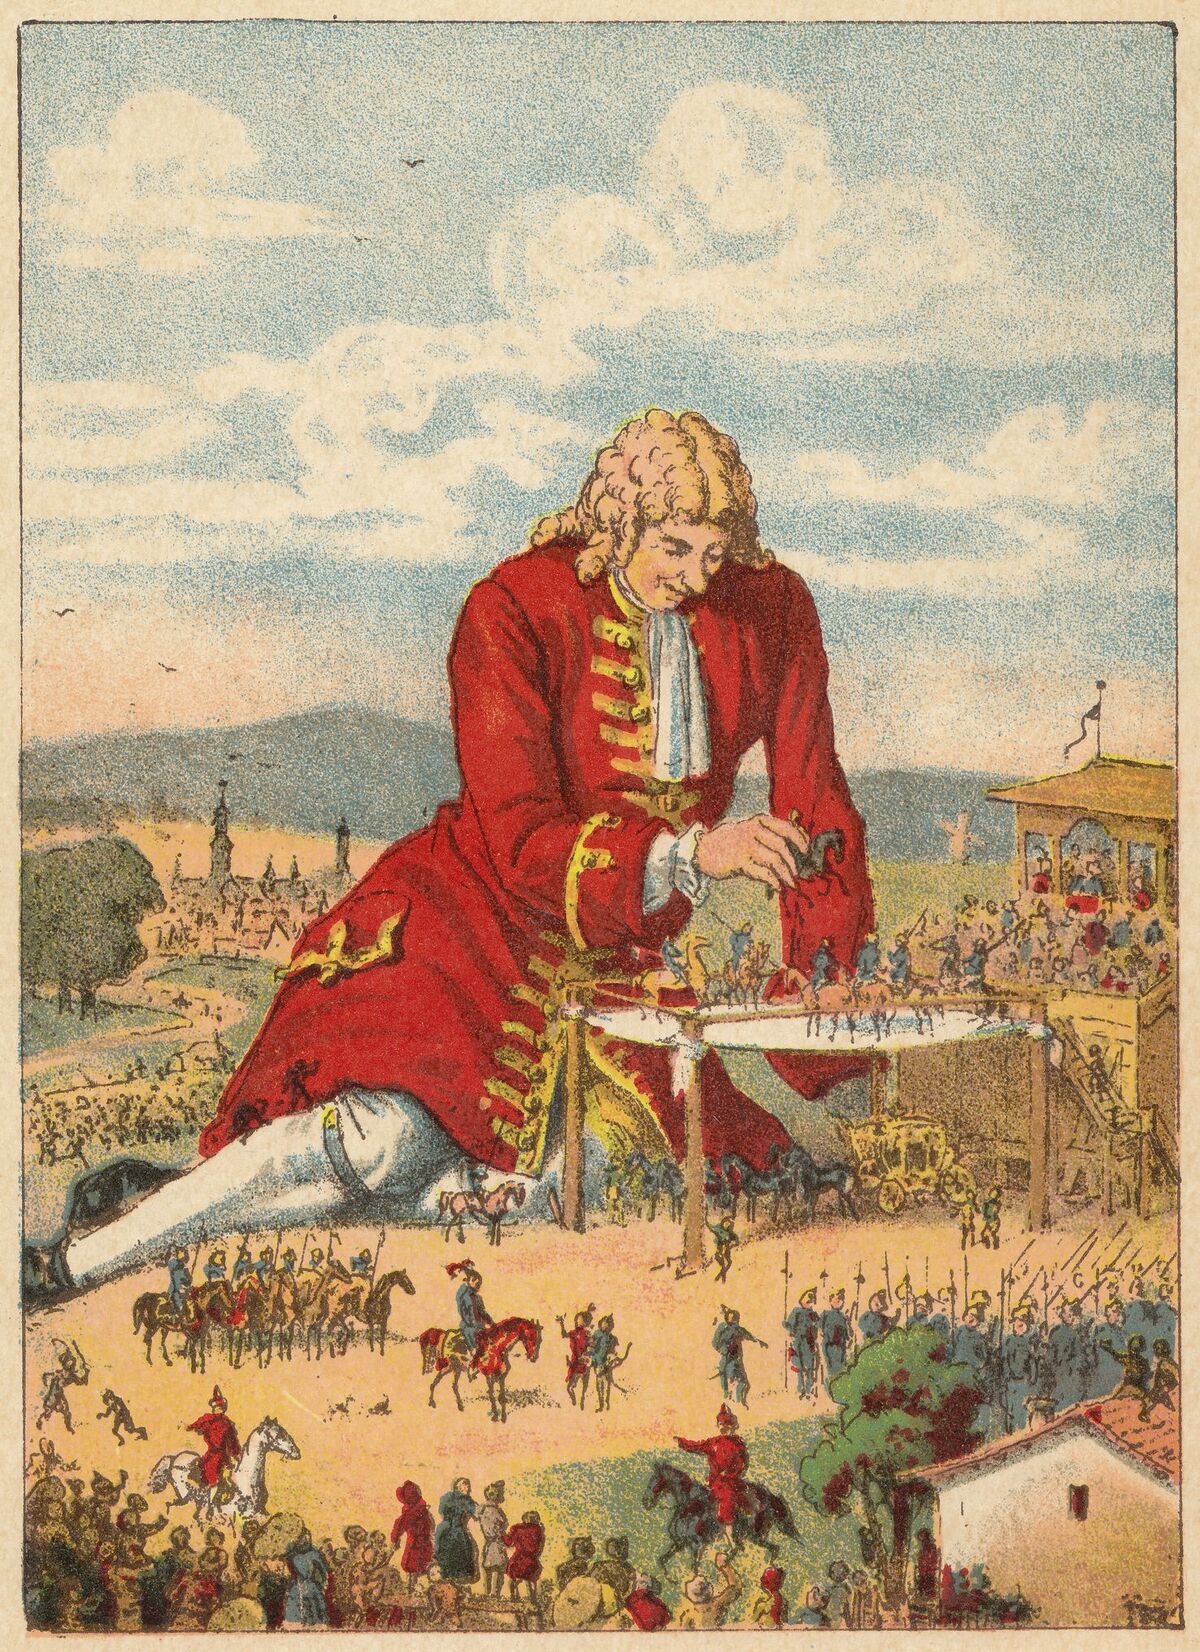 Джонатан Свифт Gulliver's Travels 1726. Джонатан Свифт путешествия Гулливера путешествие в Лилипутию. Jonathan Swift Gulliver's Travels. Джонатан Свифт путешествия Гулливера иллюстрации. Отец гулливера